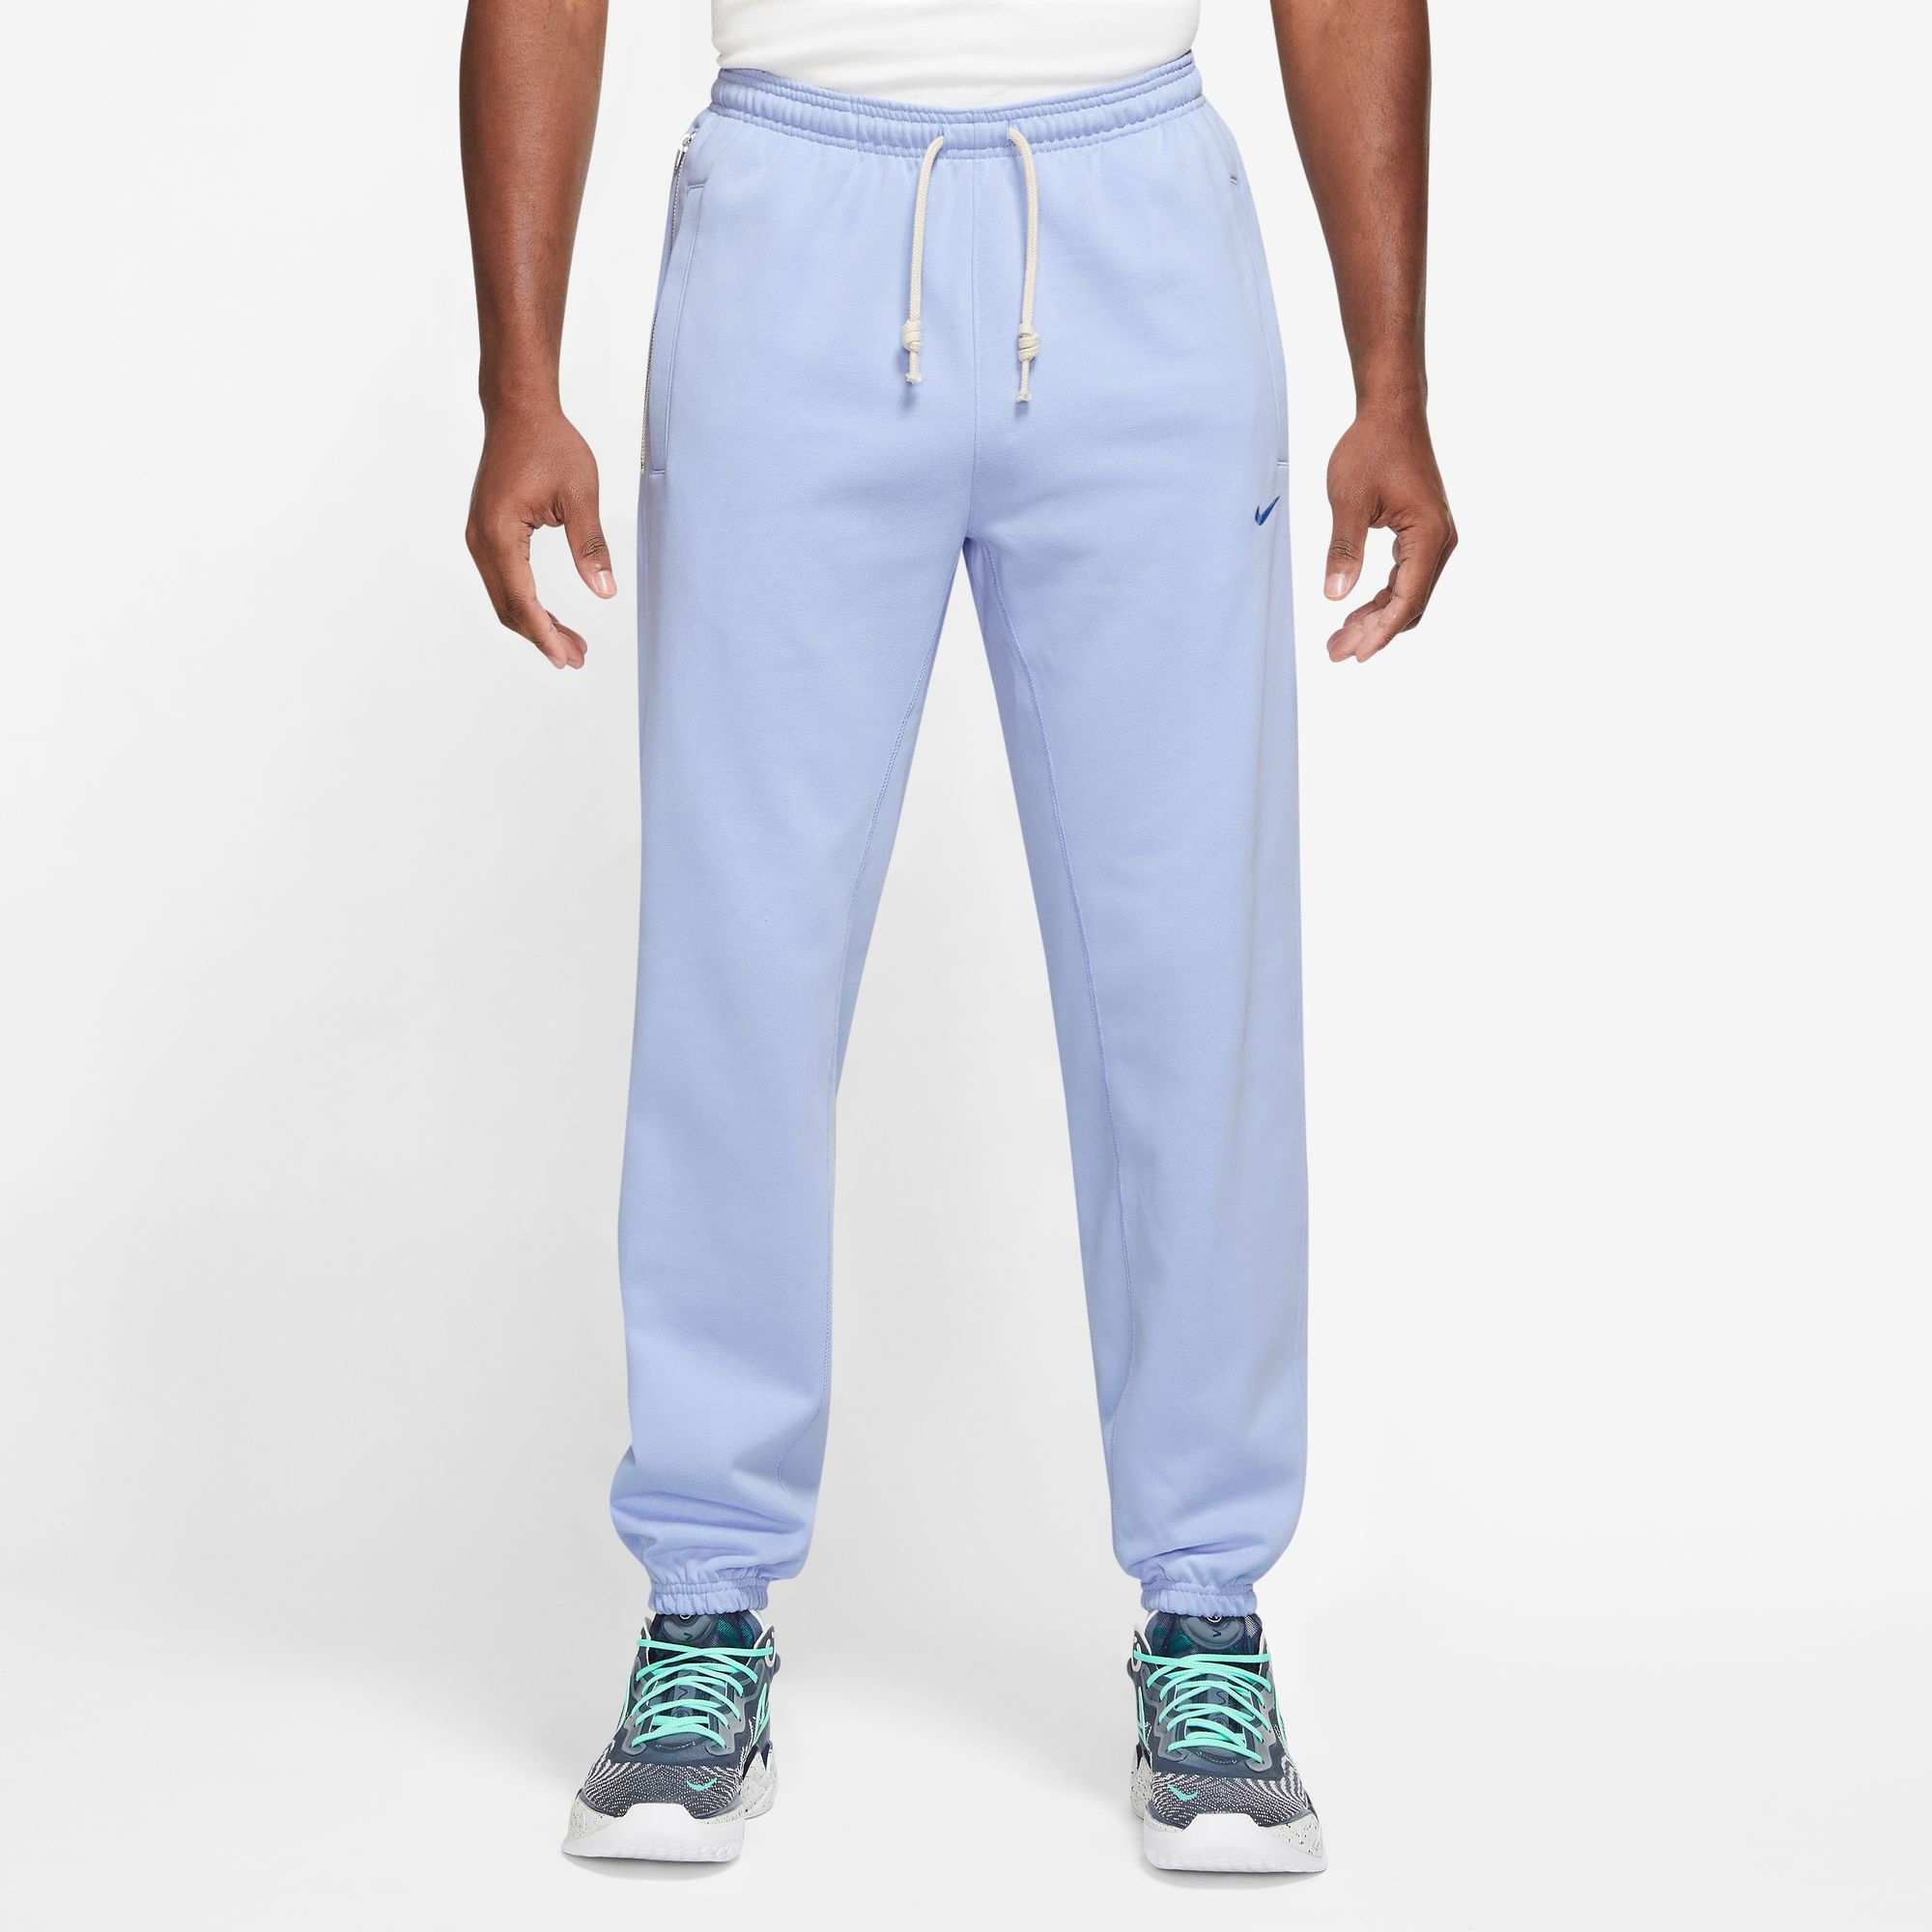 Nike Dri-Fit Standard Issue Pants